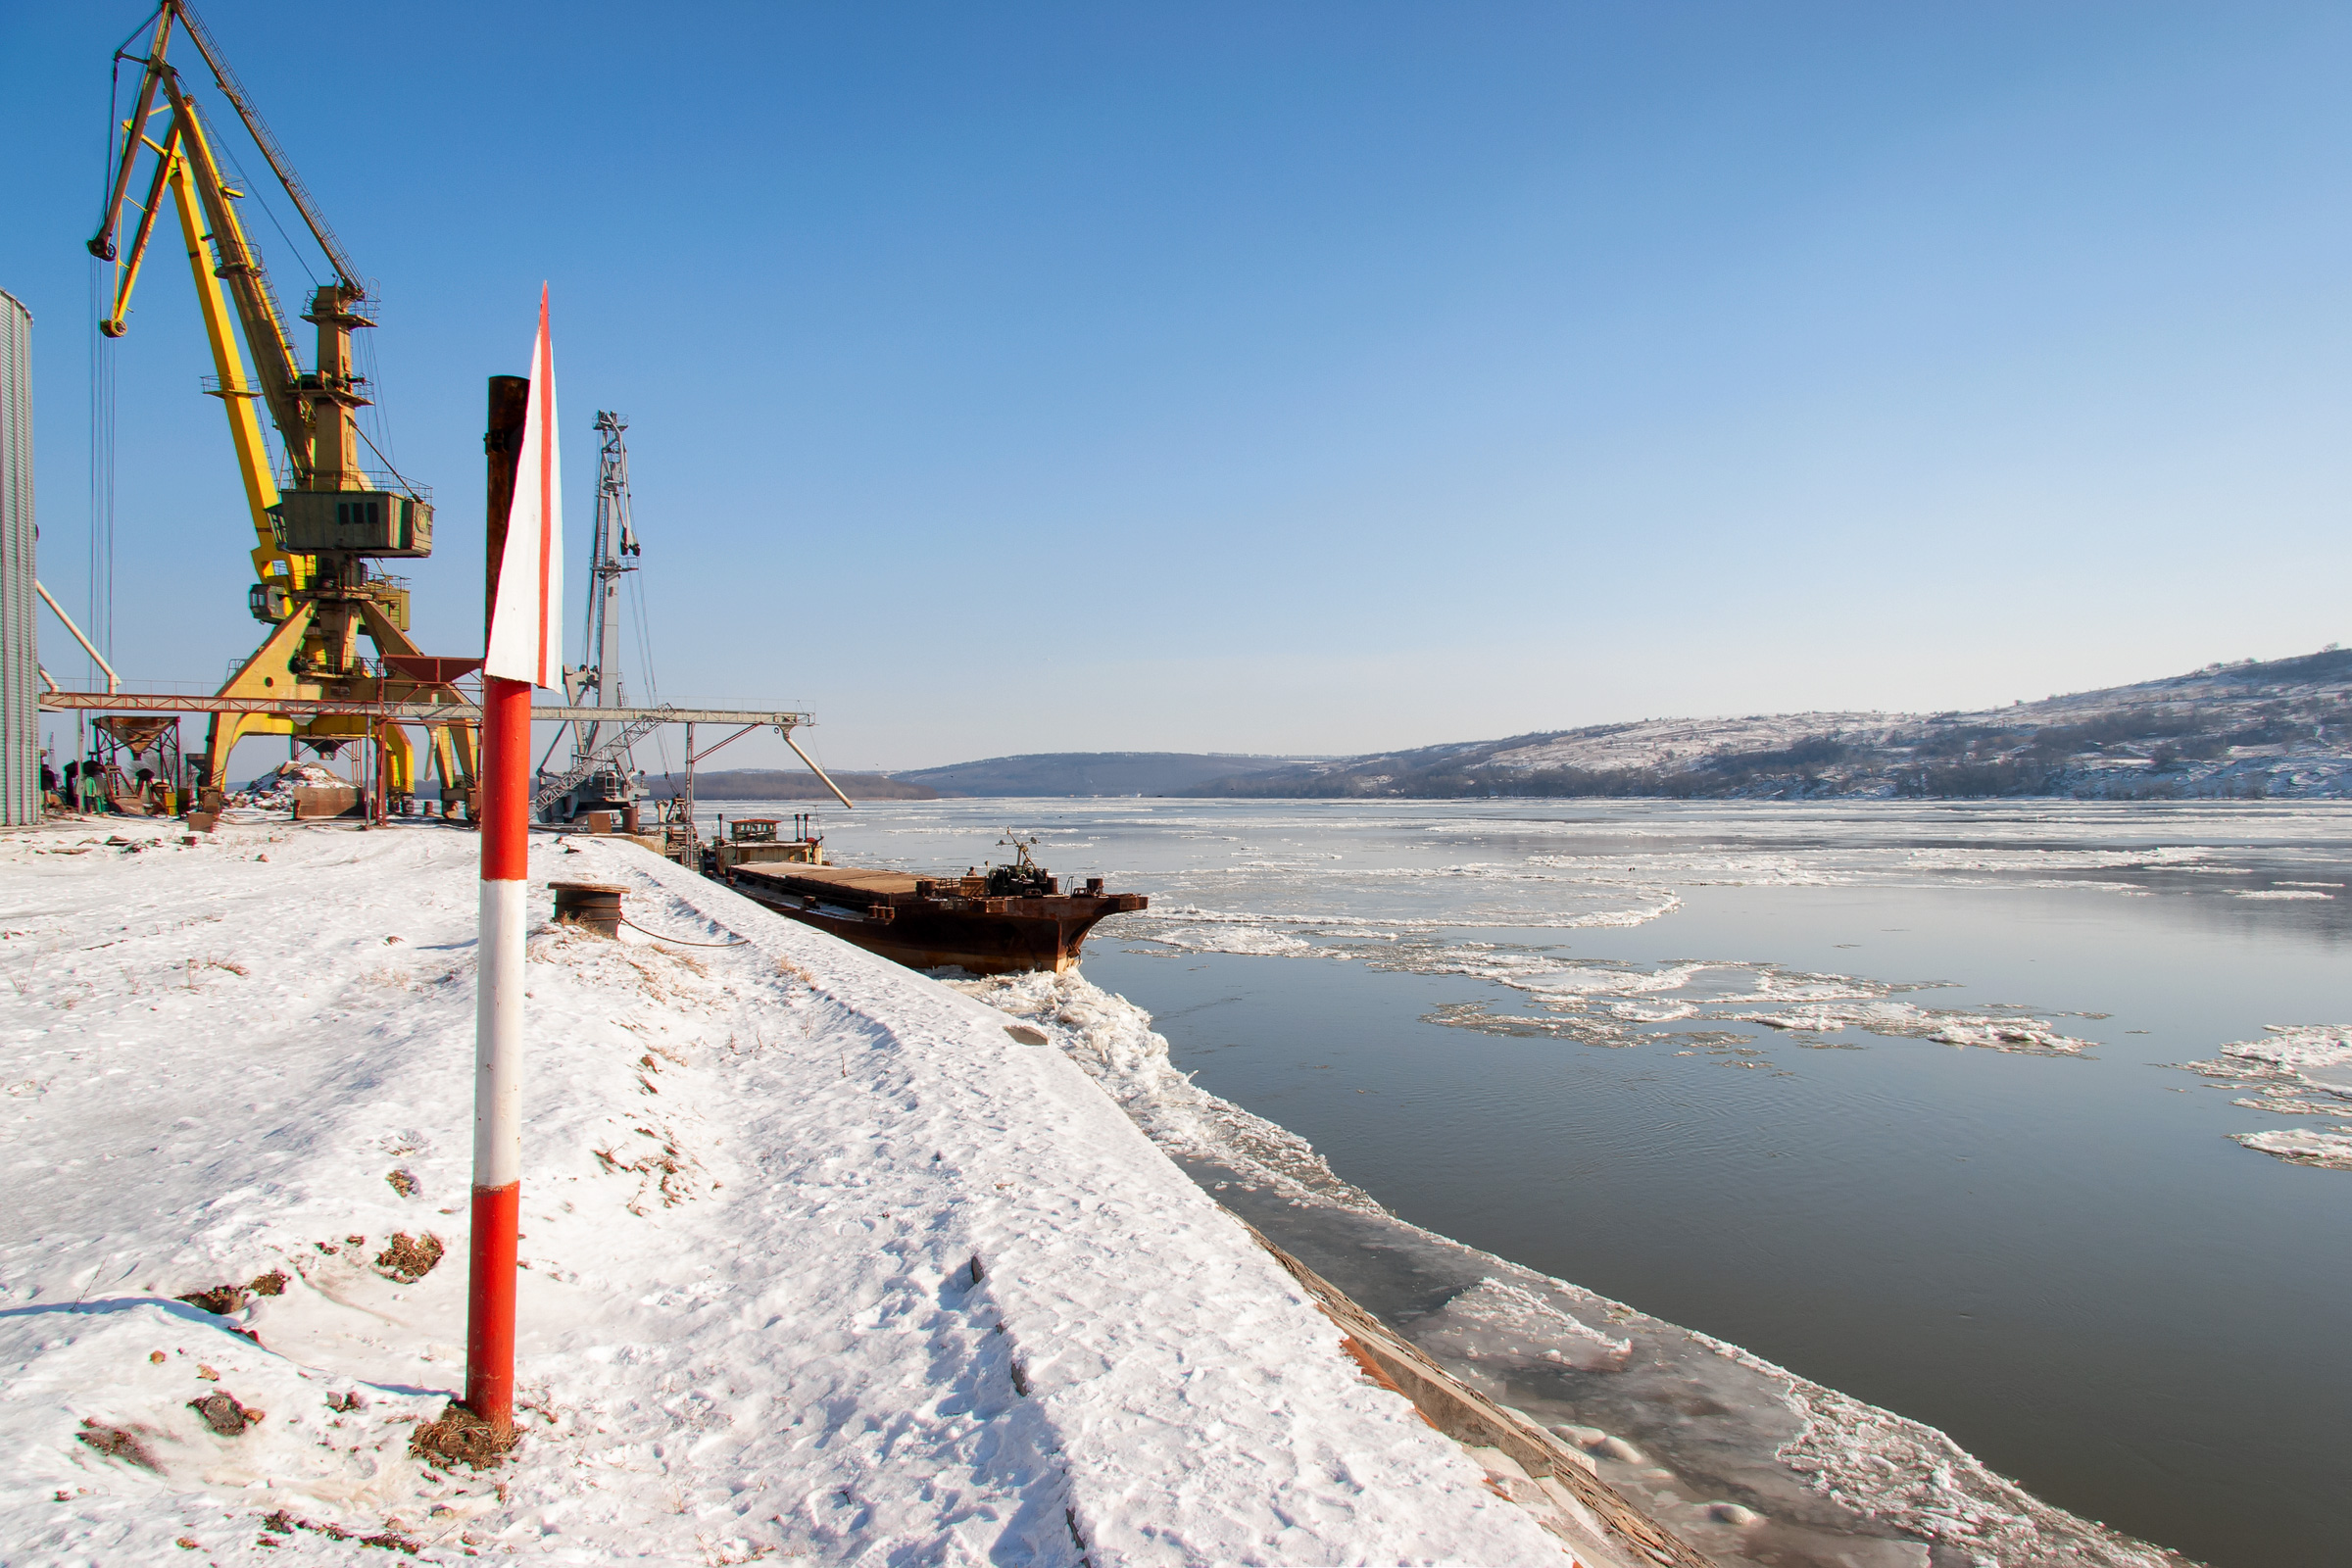 Port on the Danube in winter